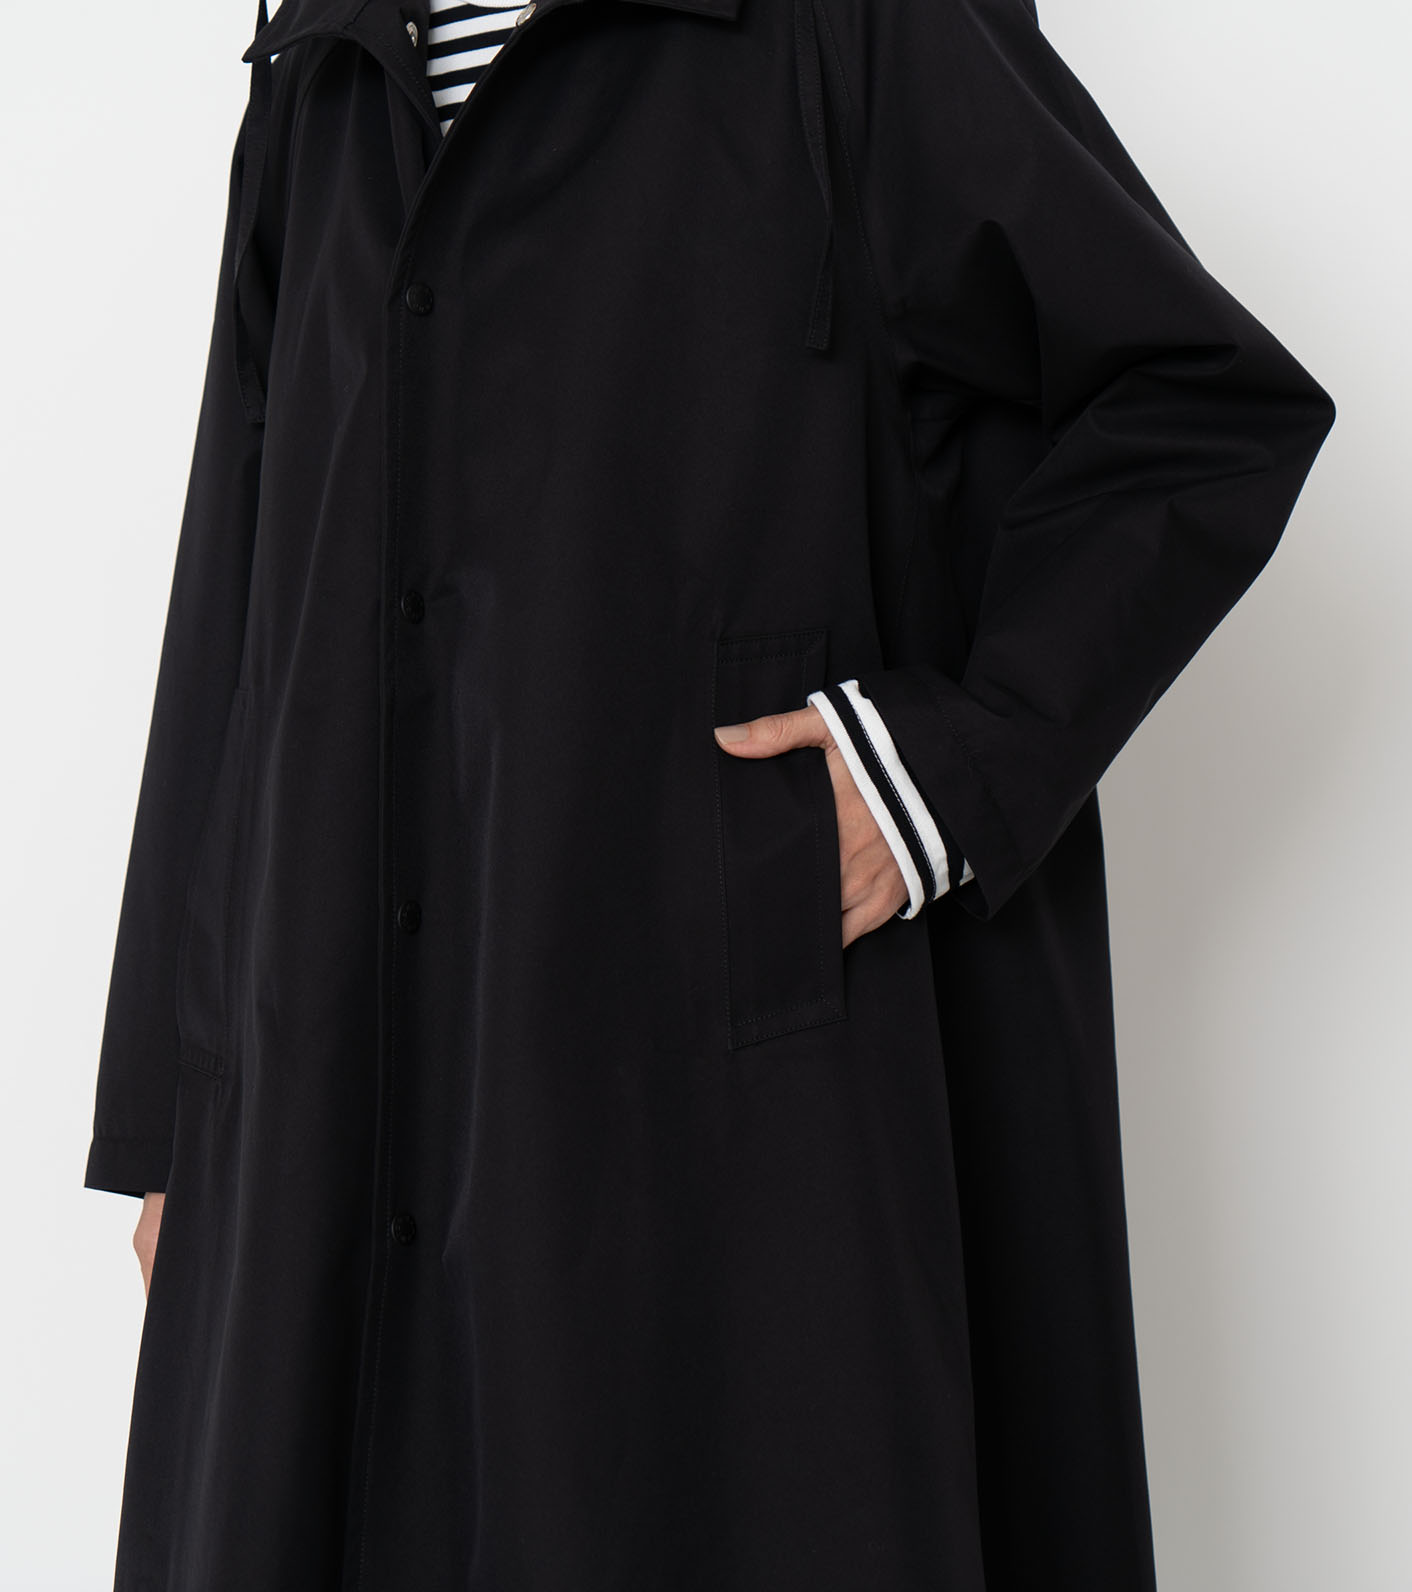 Nanamica  2L GORE-TEX Hooded Coat